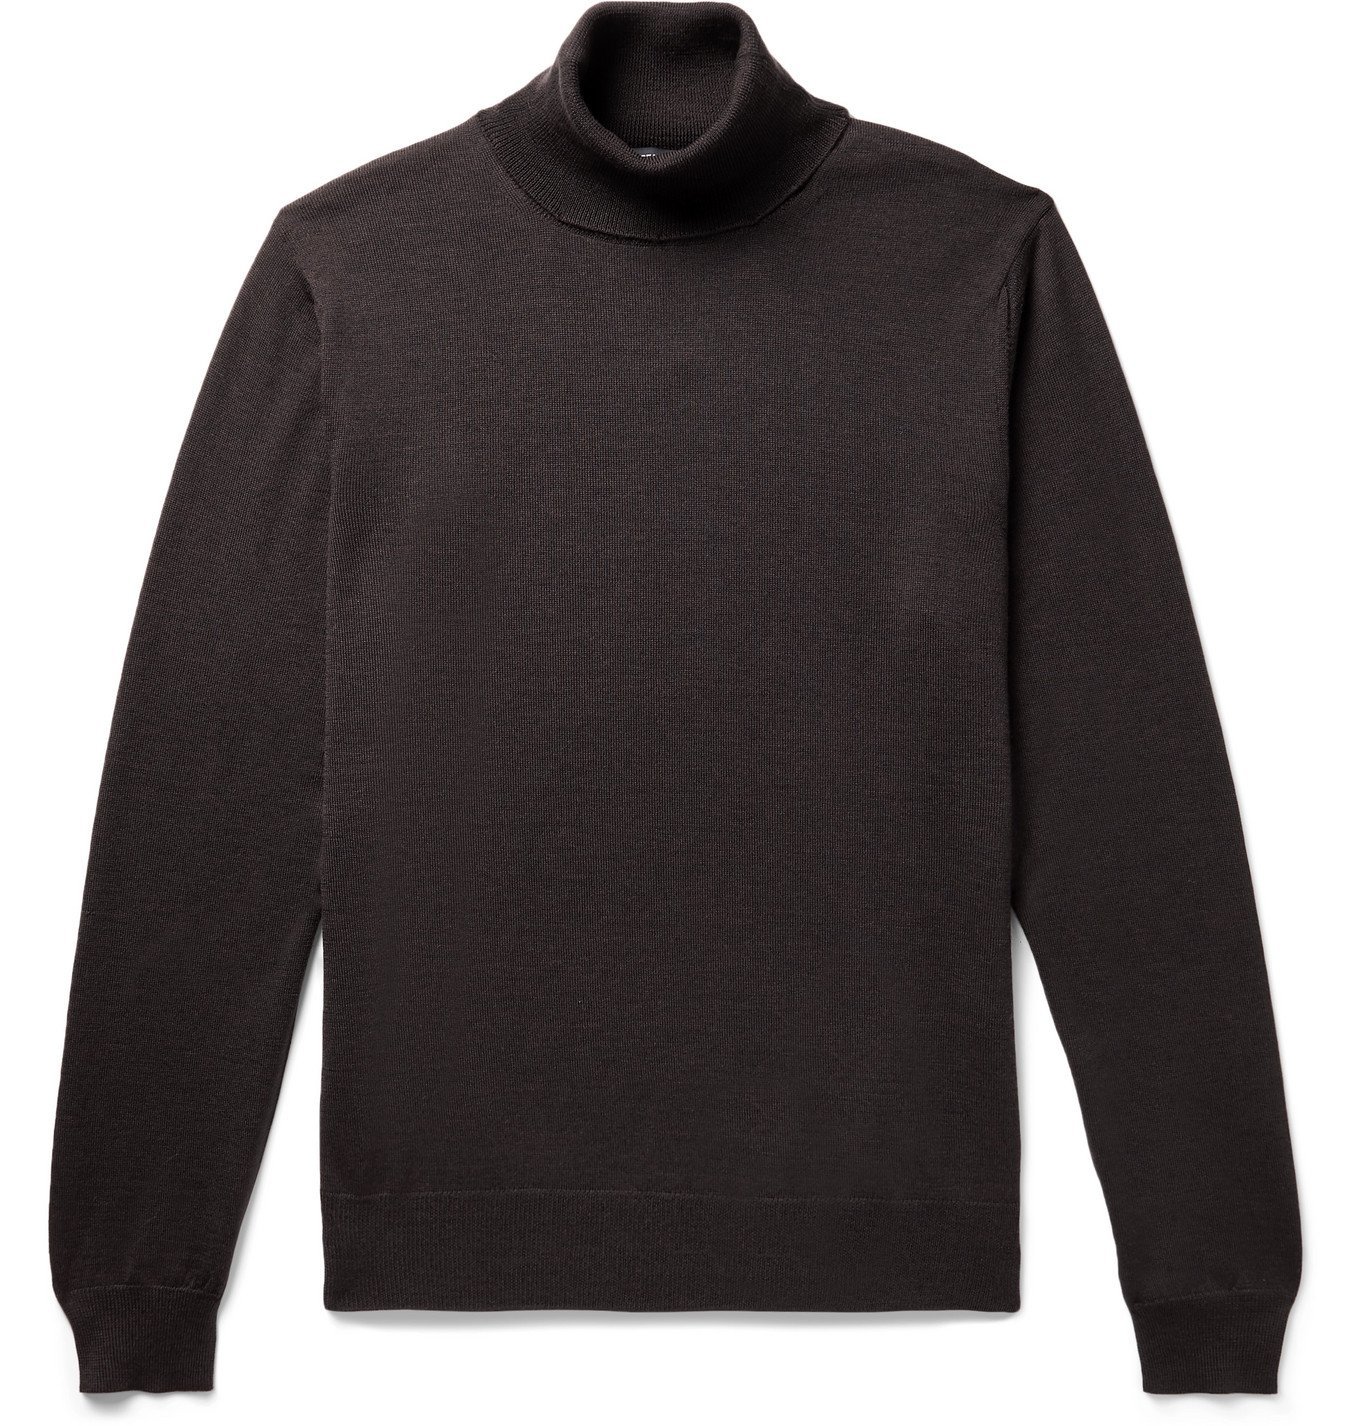 Beams F - Merino Wool Rollneck Sweater - Brown Beams F